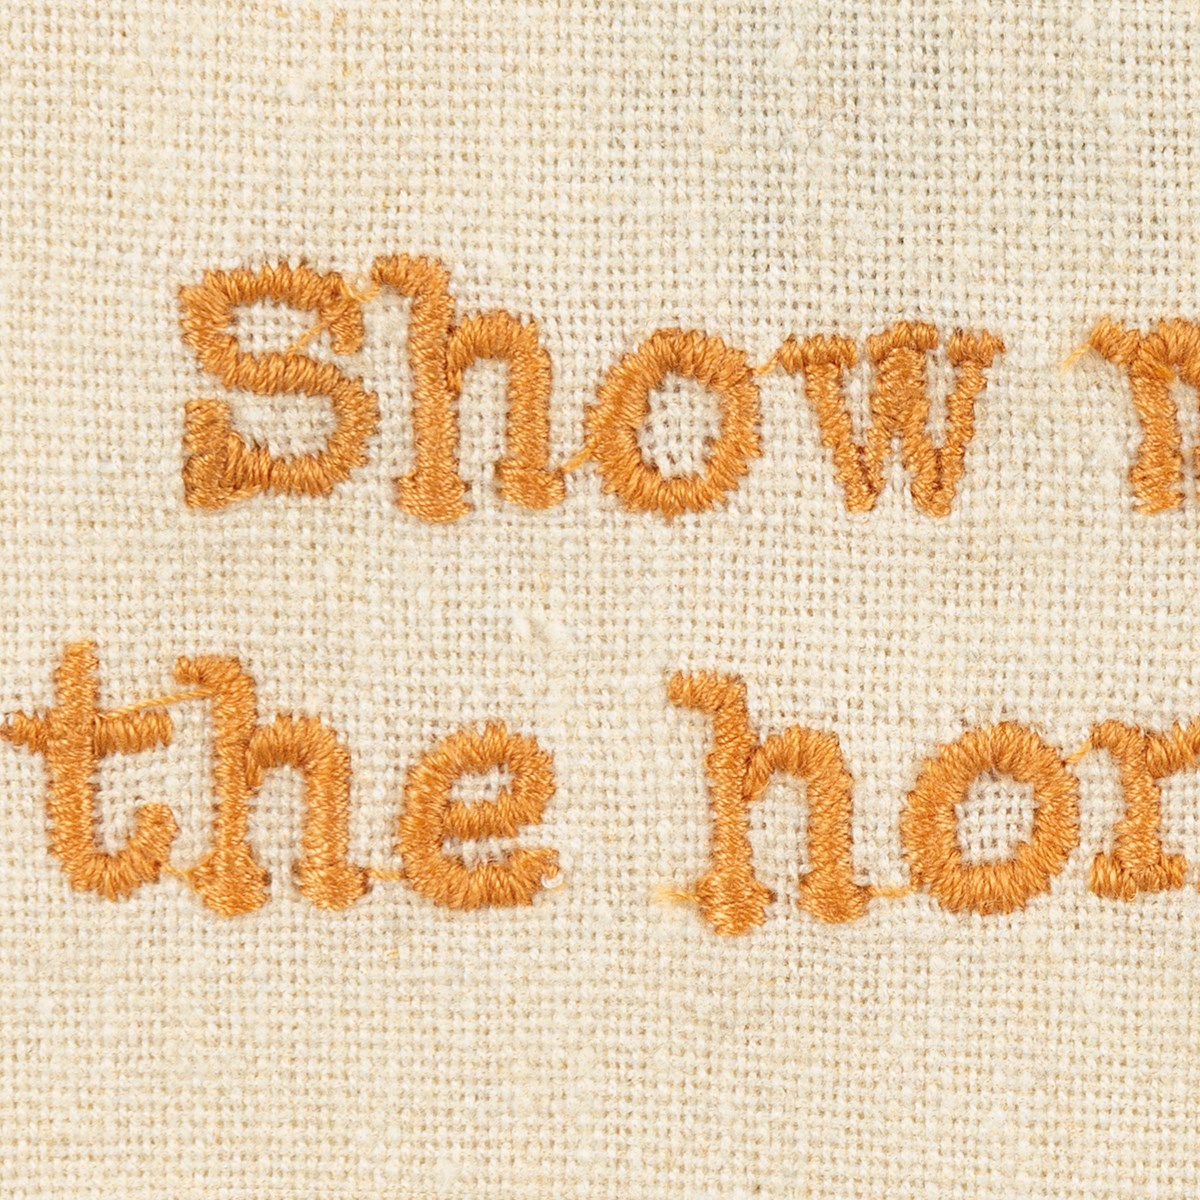 Show Me The Honey Kitchen Towel - Cotton, Linen